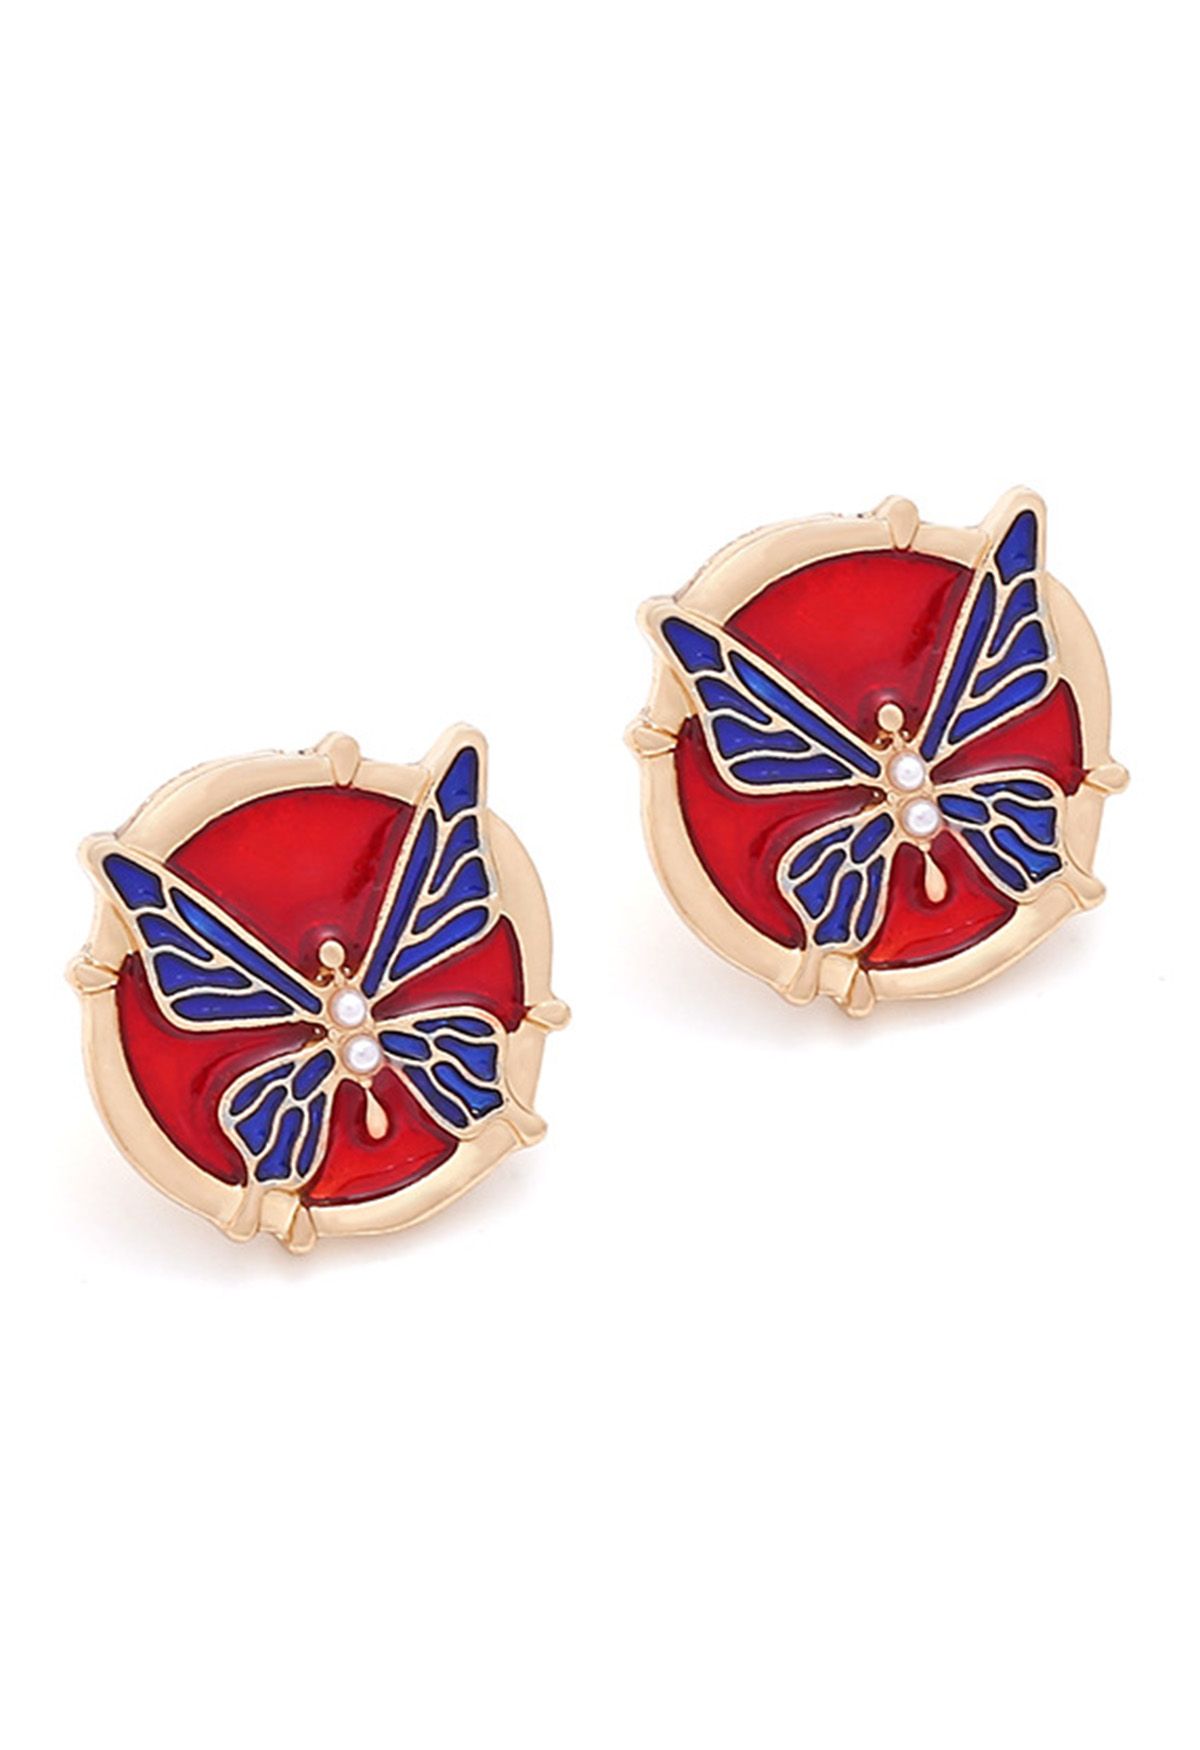 Blaue Schmetterlings-Ohrringe aus Metall, aus denen Öl ausläuft